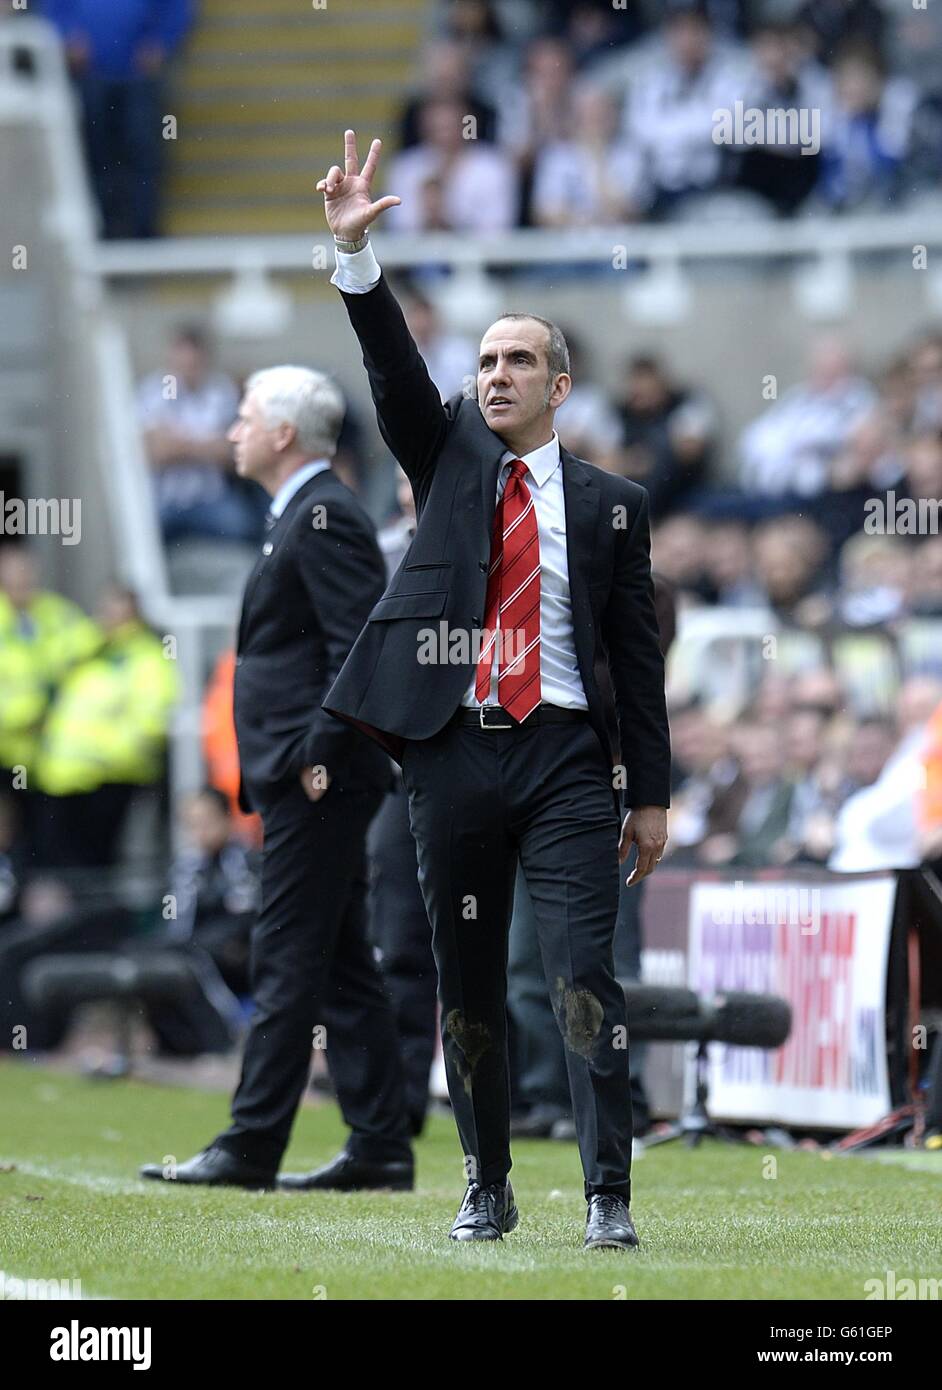 El gerente de Sunderland, Paolo Di Canio, muestra tres dedos para significar los tres goles anotados por su equipo en el partido Foto de stock